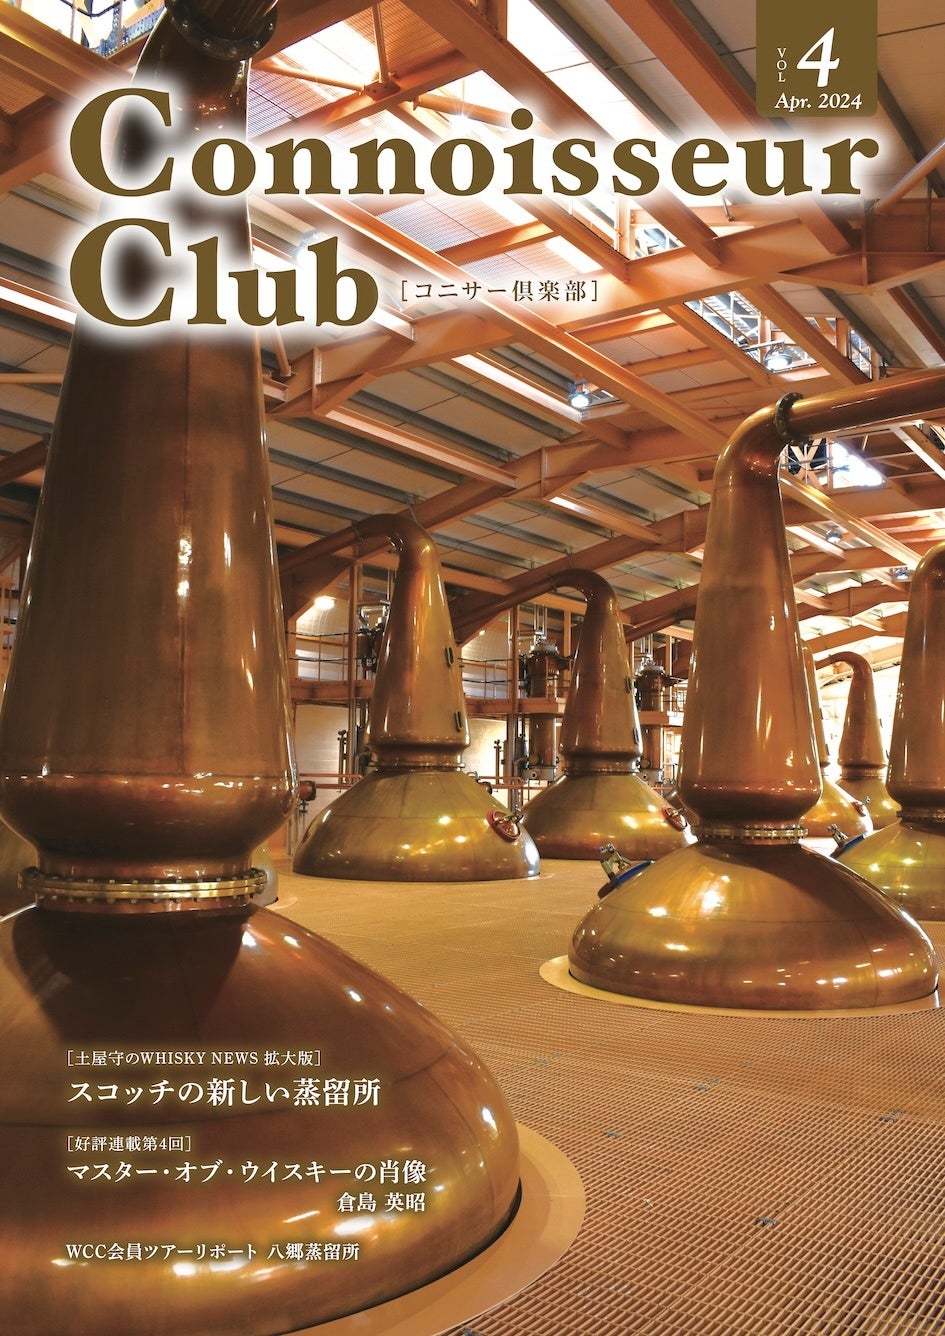 ウイスキーコニサークラブの会報誌『コニサー倶楽部』vol.4、 4月中旬に発行。順次配布開始